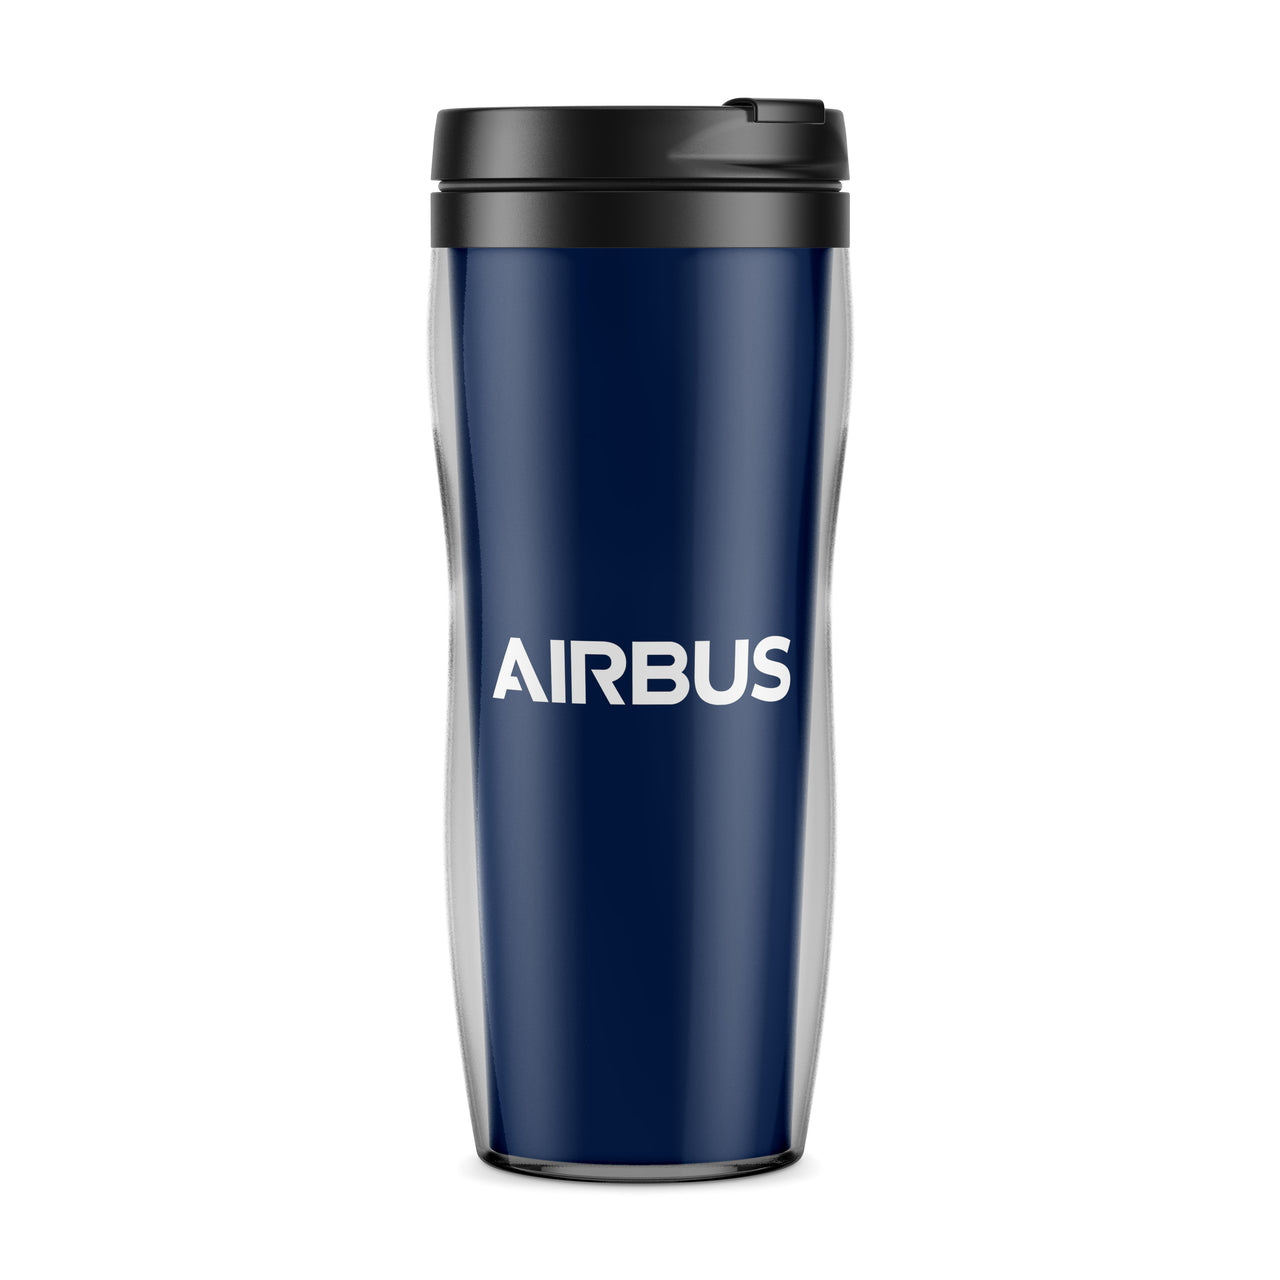 Airbus & Text Designed Plastic Travel Mugs